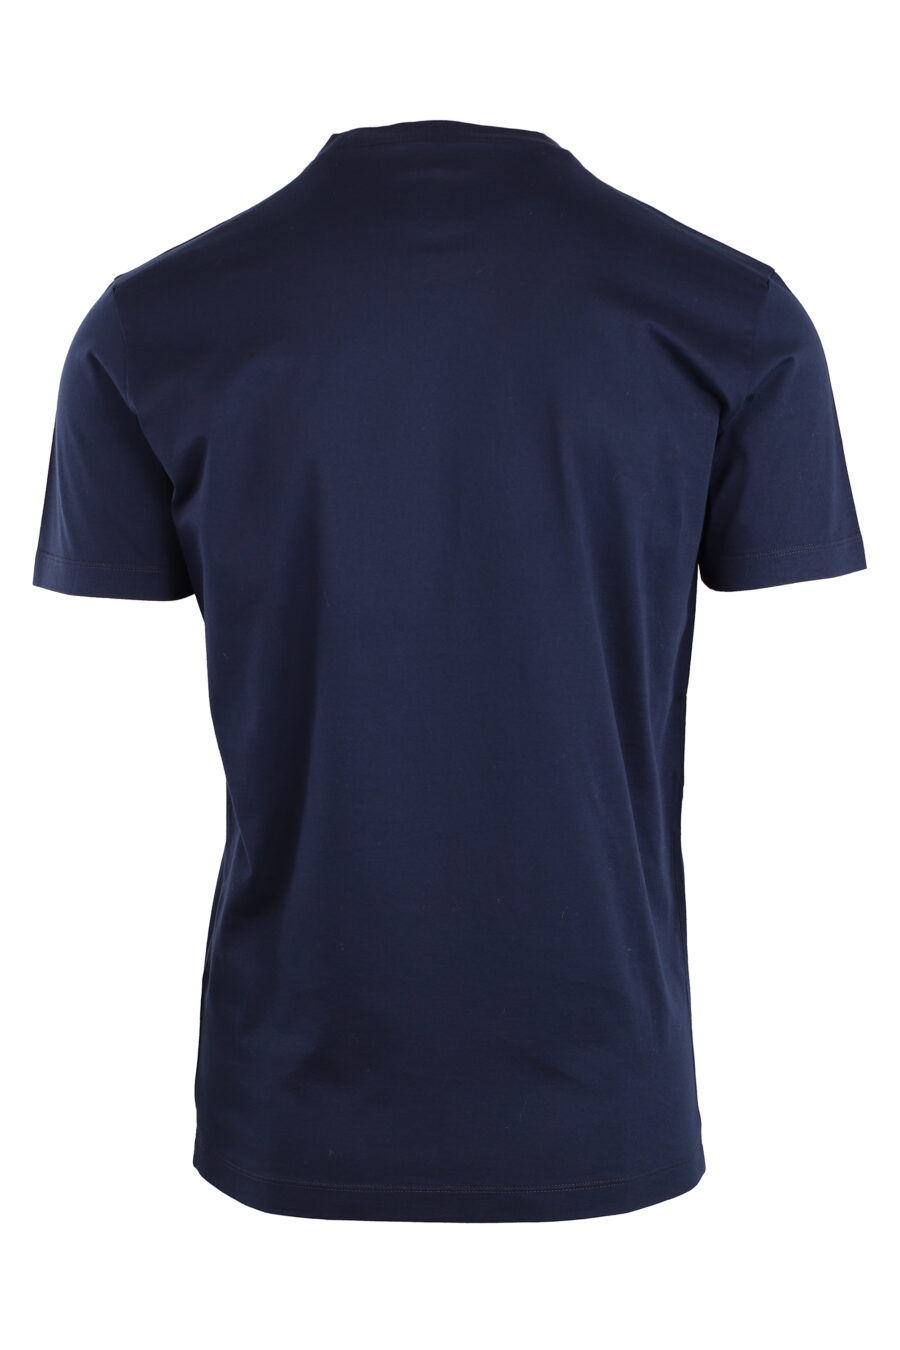 Camiseta azul oscura con minilogo "ceresio 9" - IMG 8950